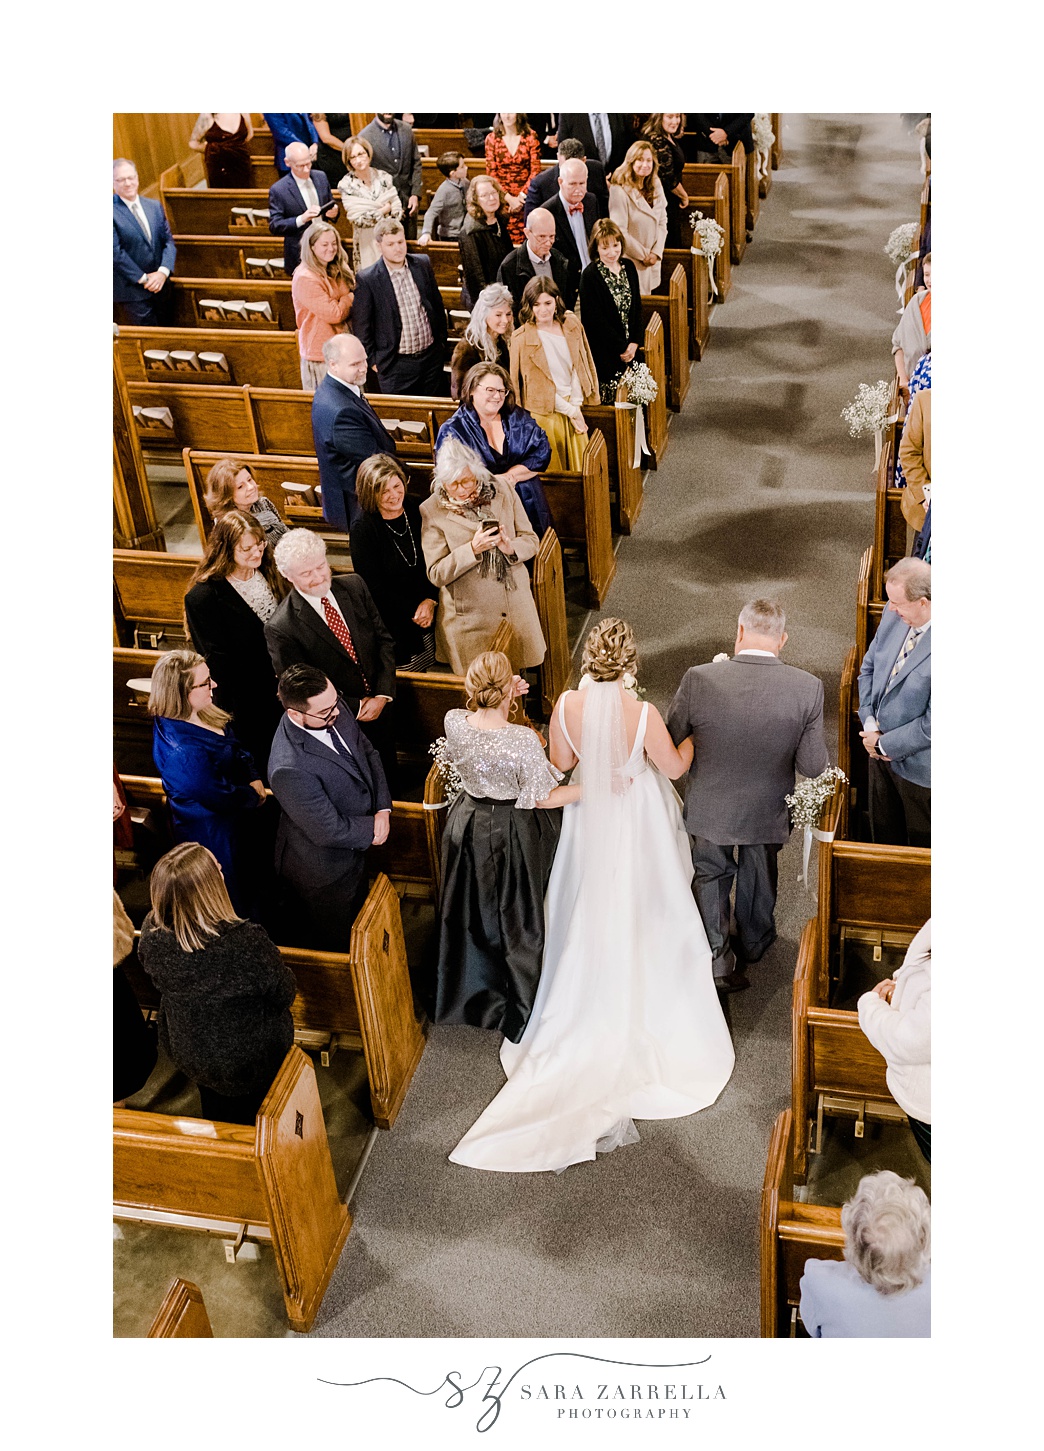 parents walk bride between wooden pews in church 